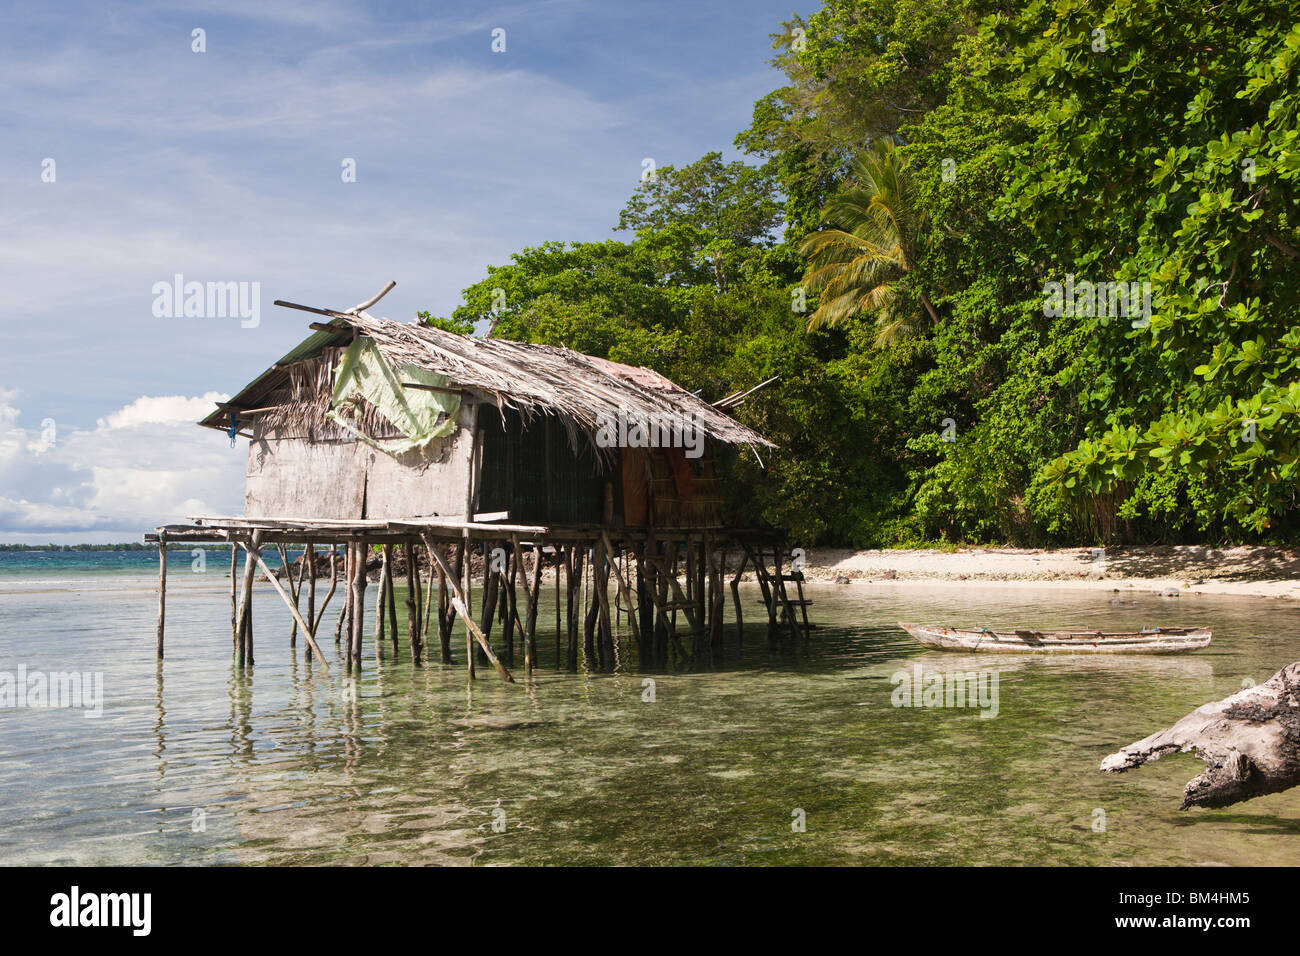 Maison sur pilotis sur l'île près de Sorong, Raja Ampat, Papouasie occidentale, en Indonésie Banque D'Images